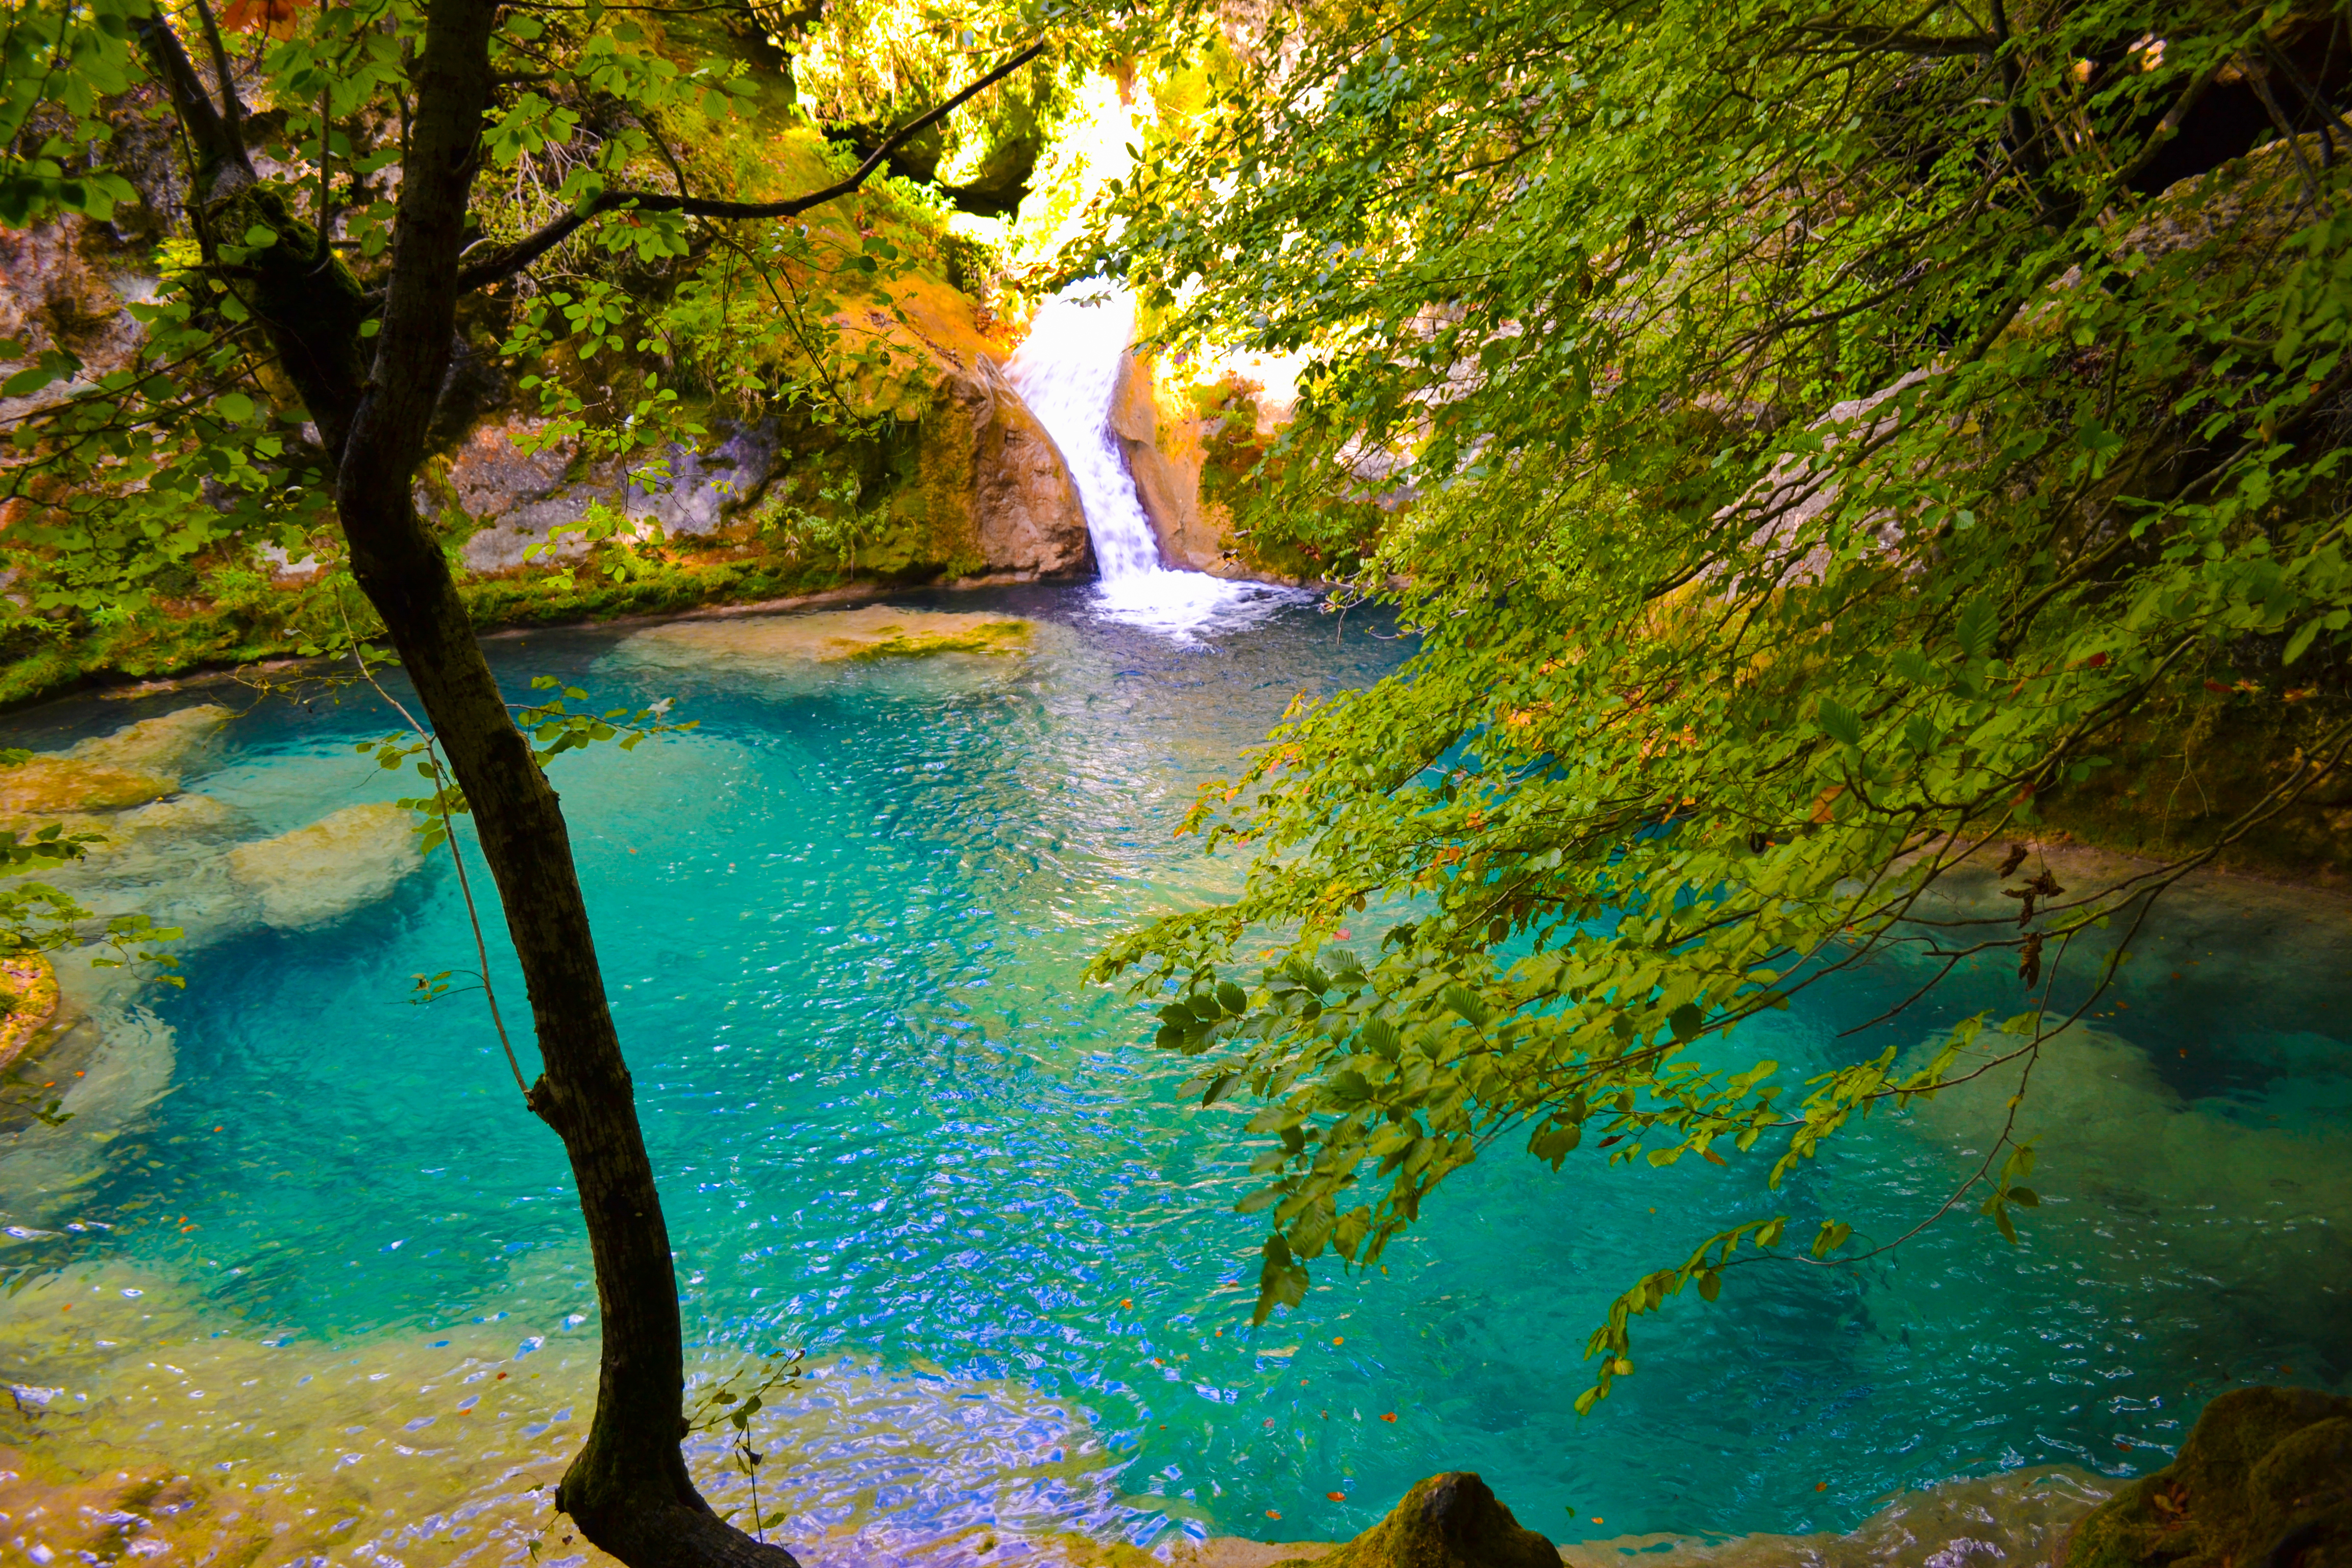 Wasserfal mit kleinem Bergsee mit türkisfarbenem Wasser mitten im Grün des Waldes